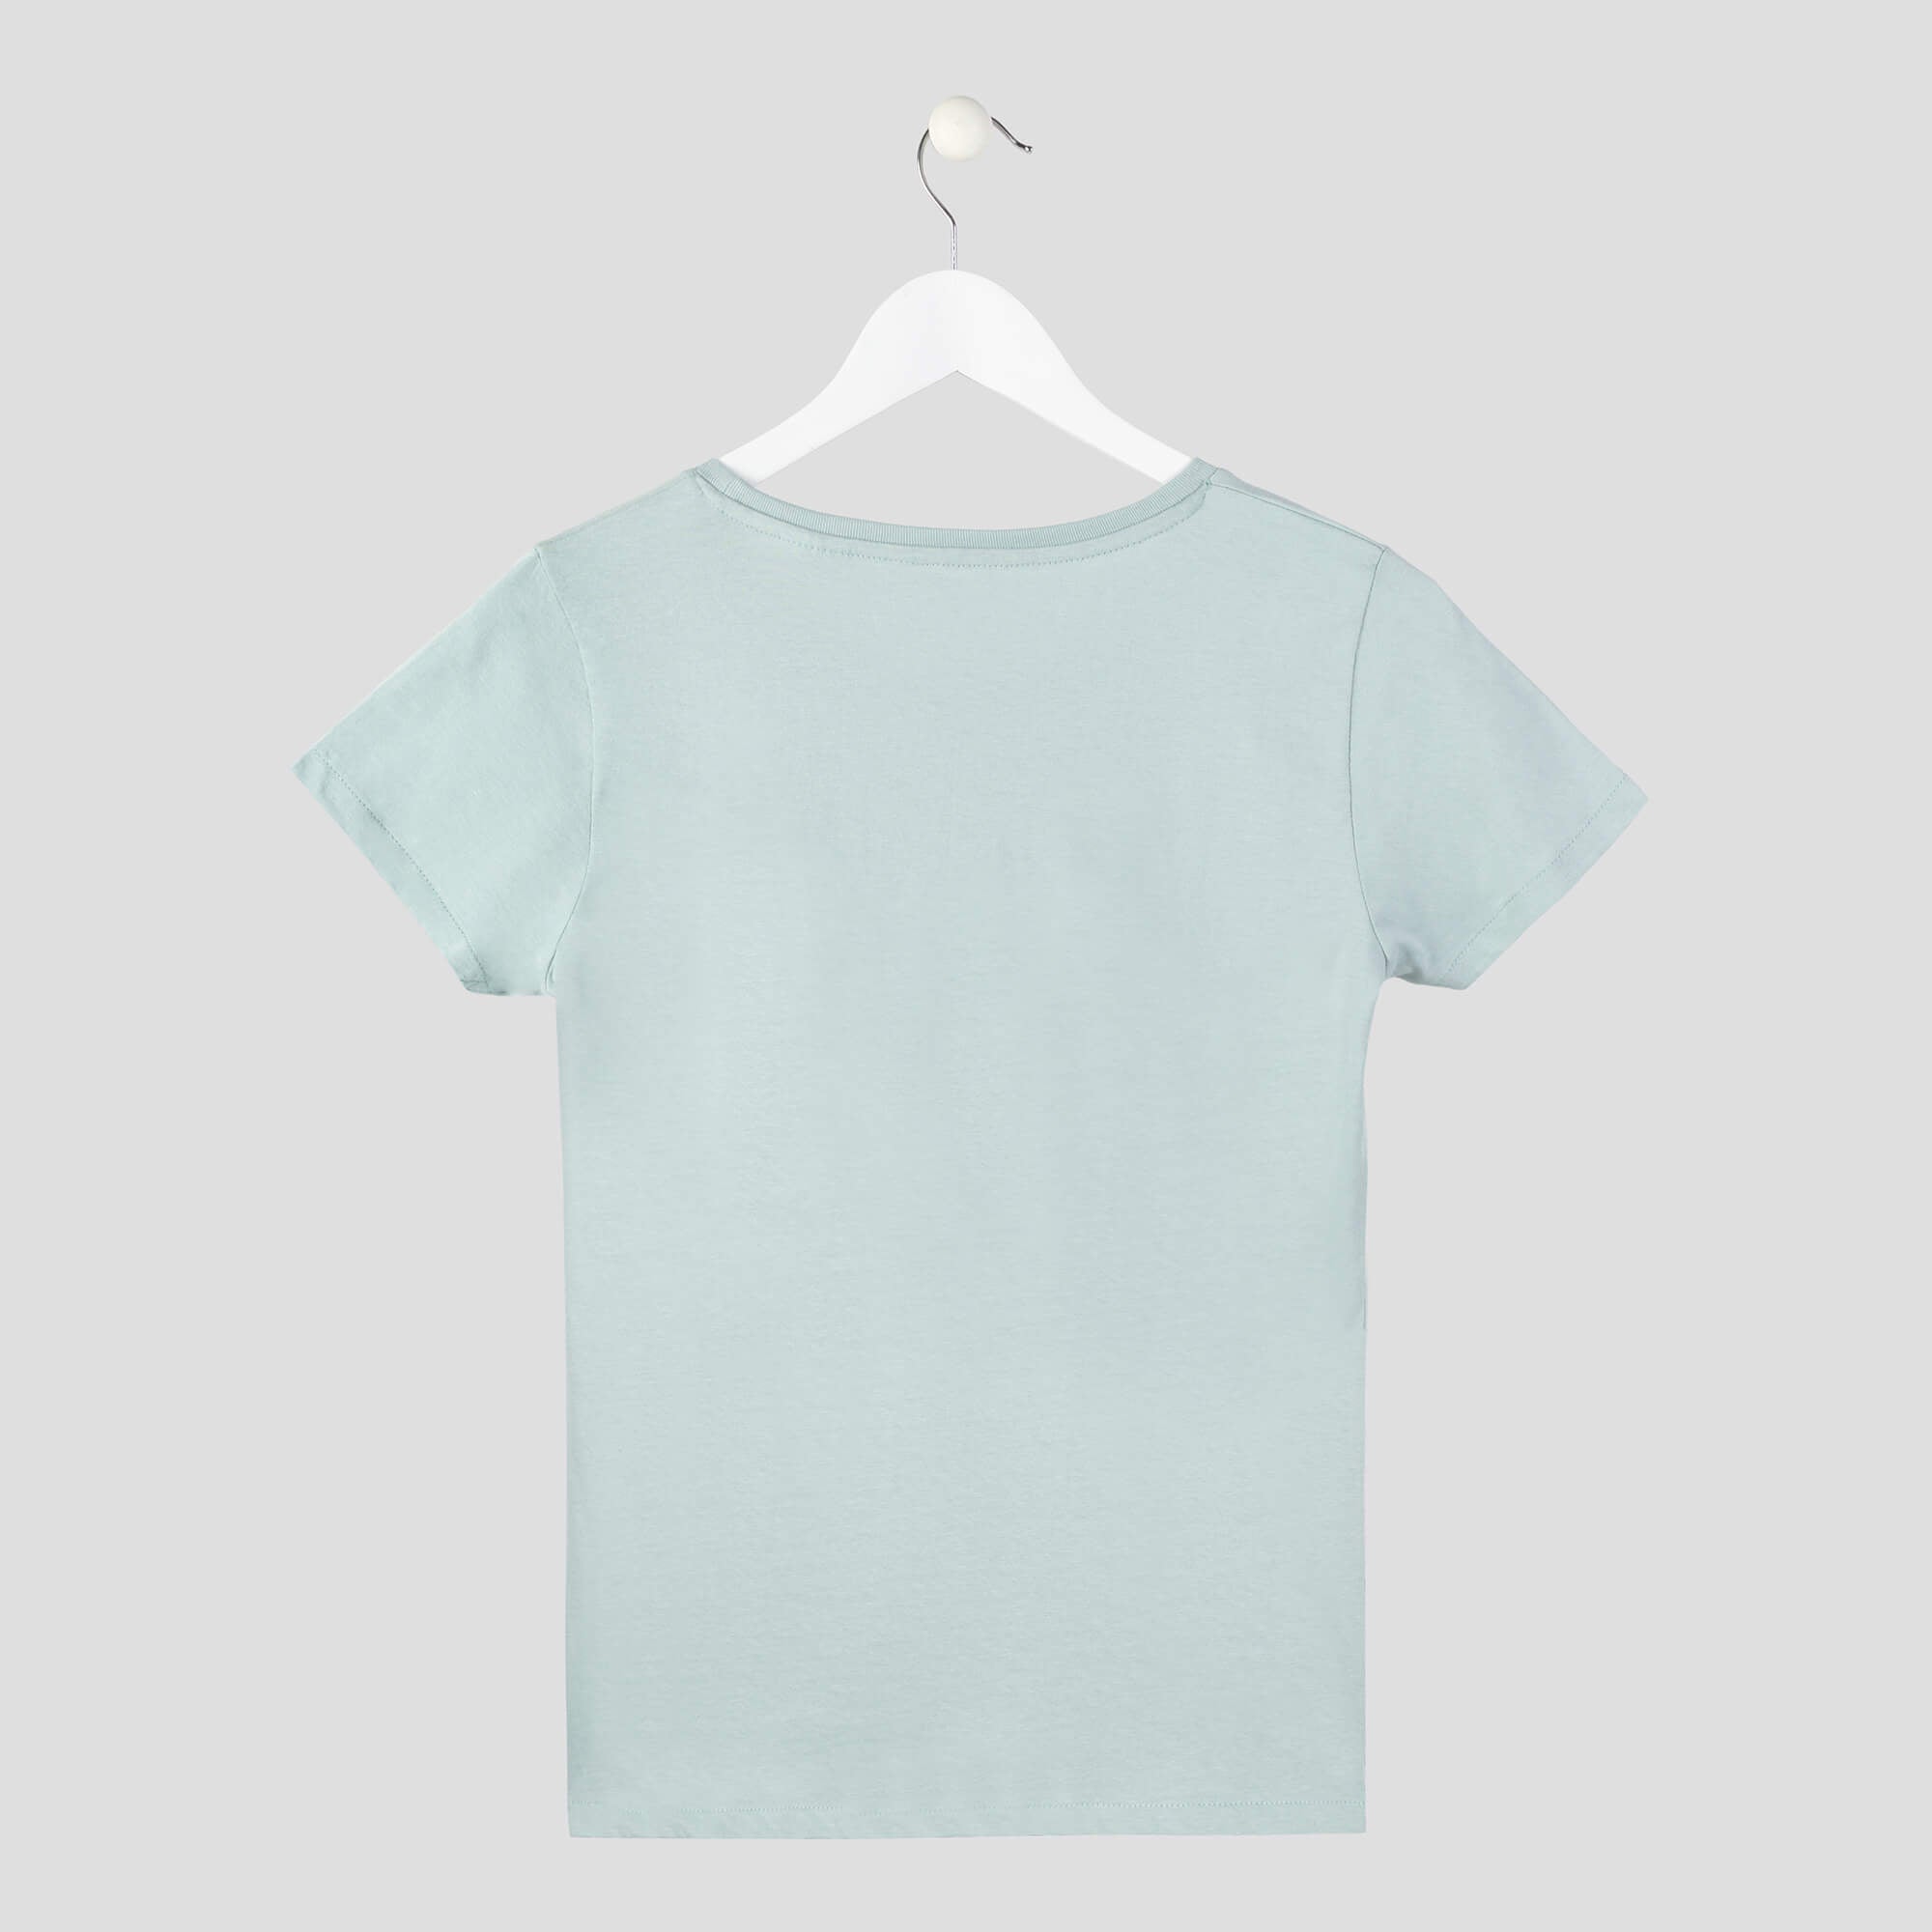 camiseta process ama el proceso minimalista verde mujer espalda